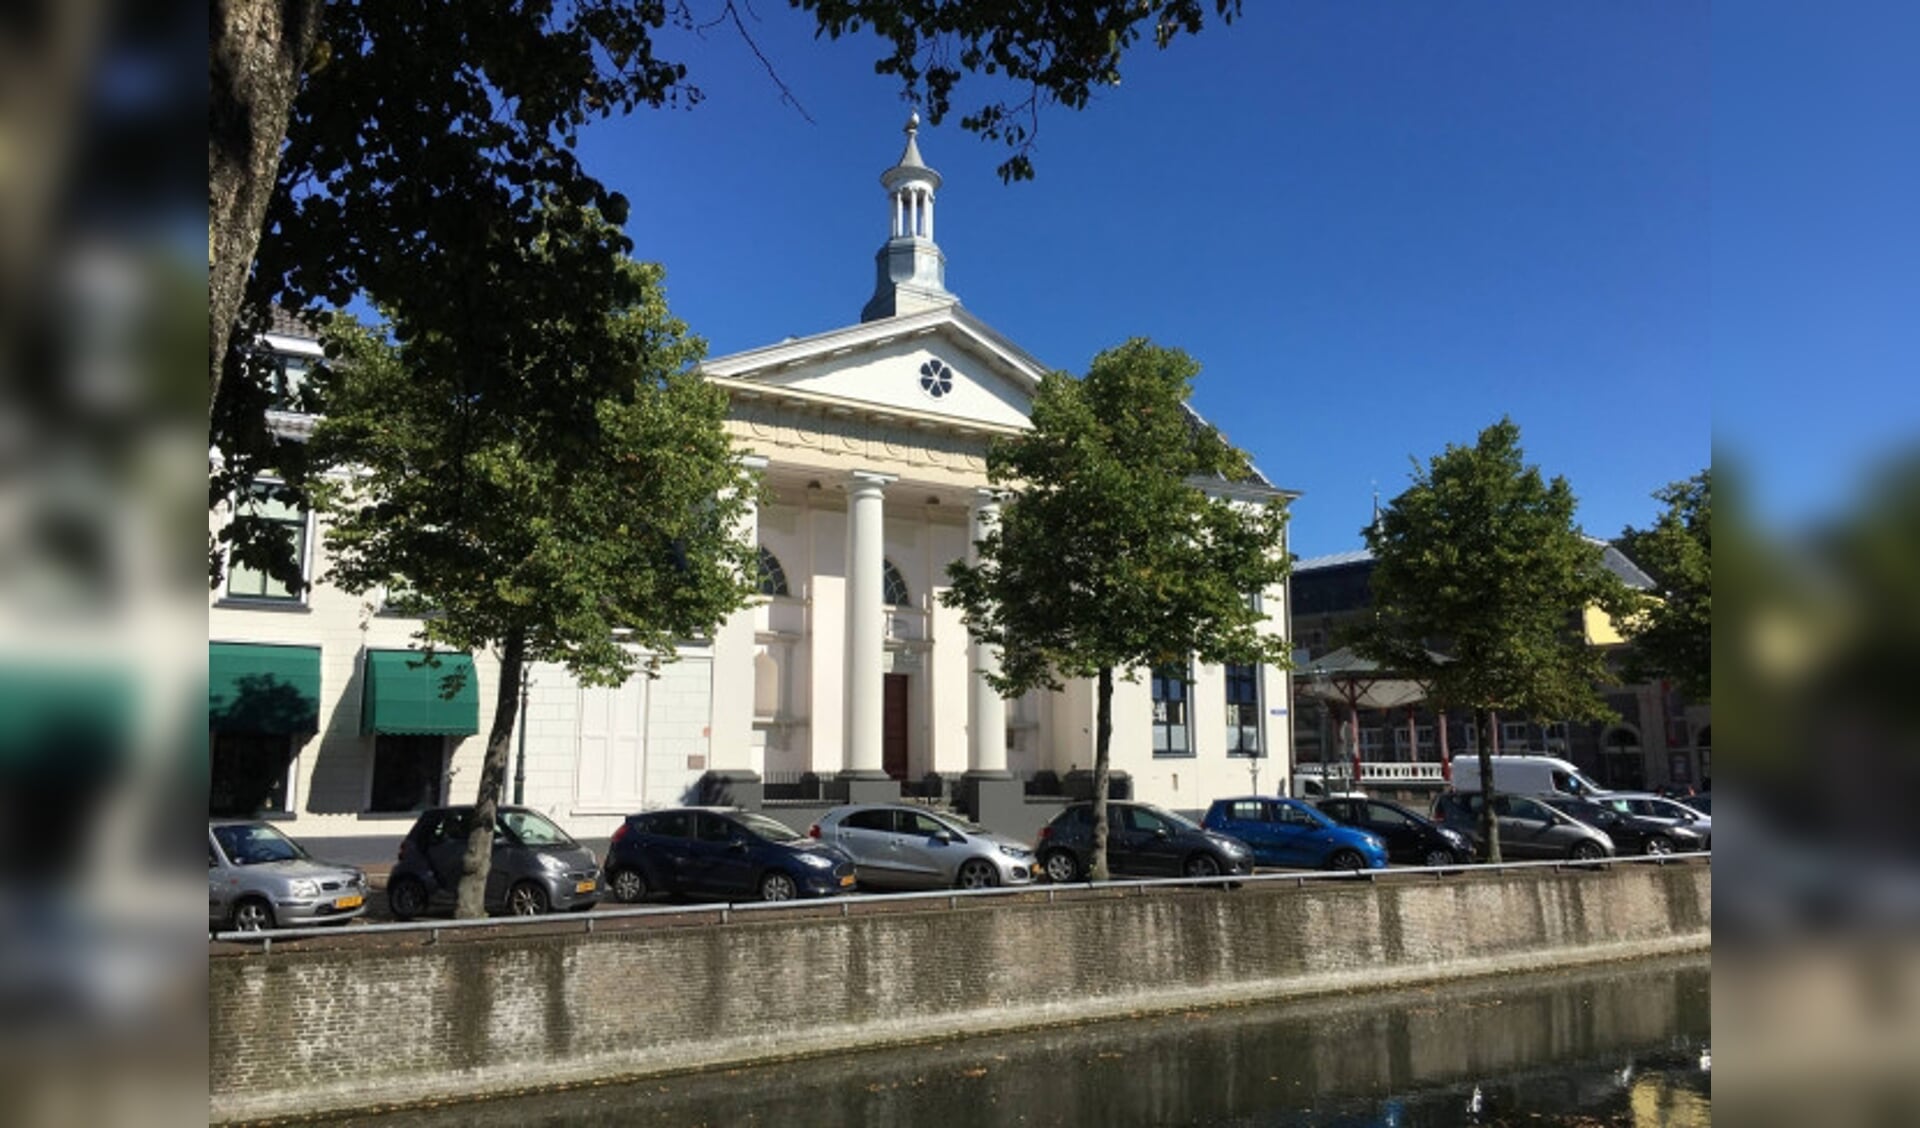  De Lutherse Kerk een goed voorbeeld van classicisme in Kampen. 